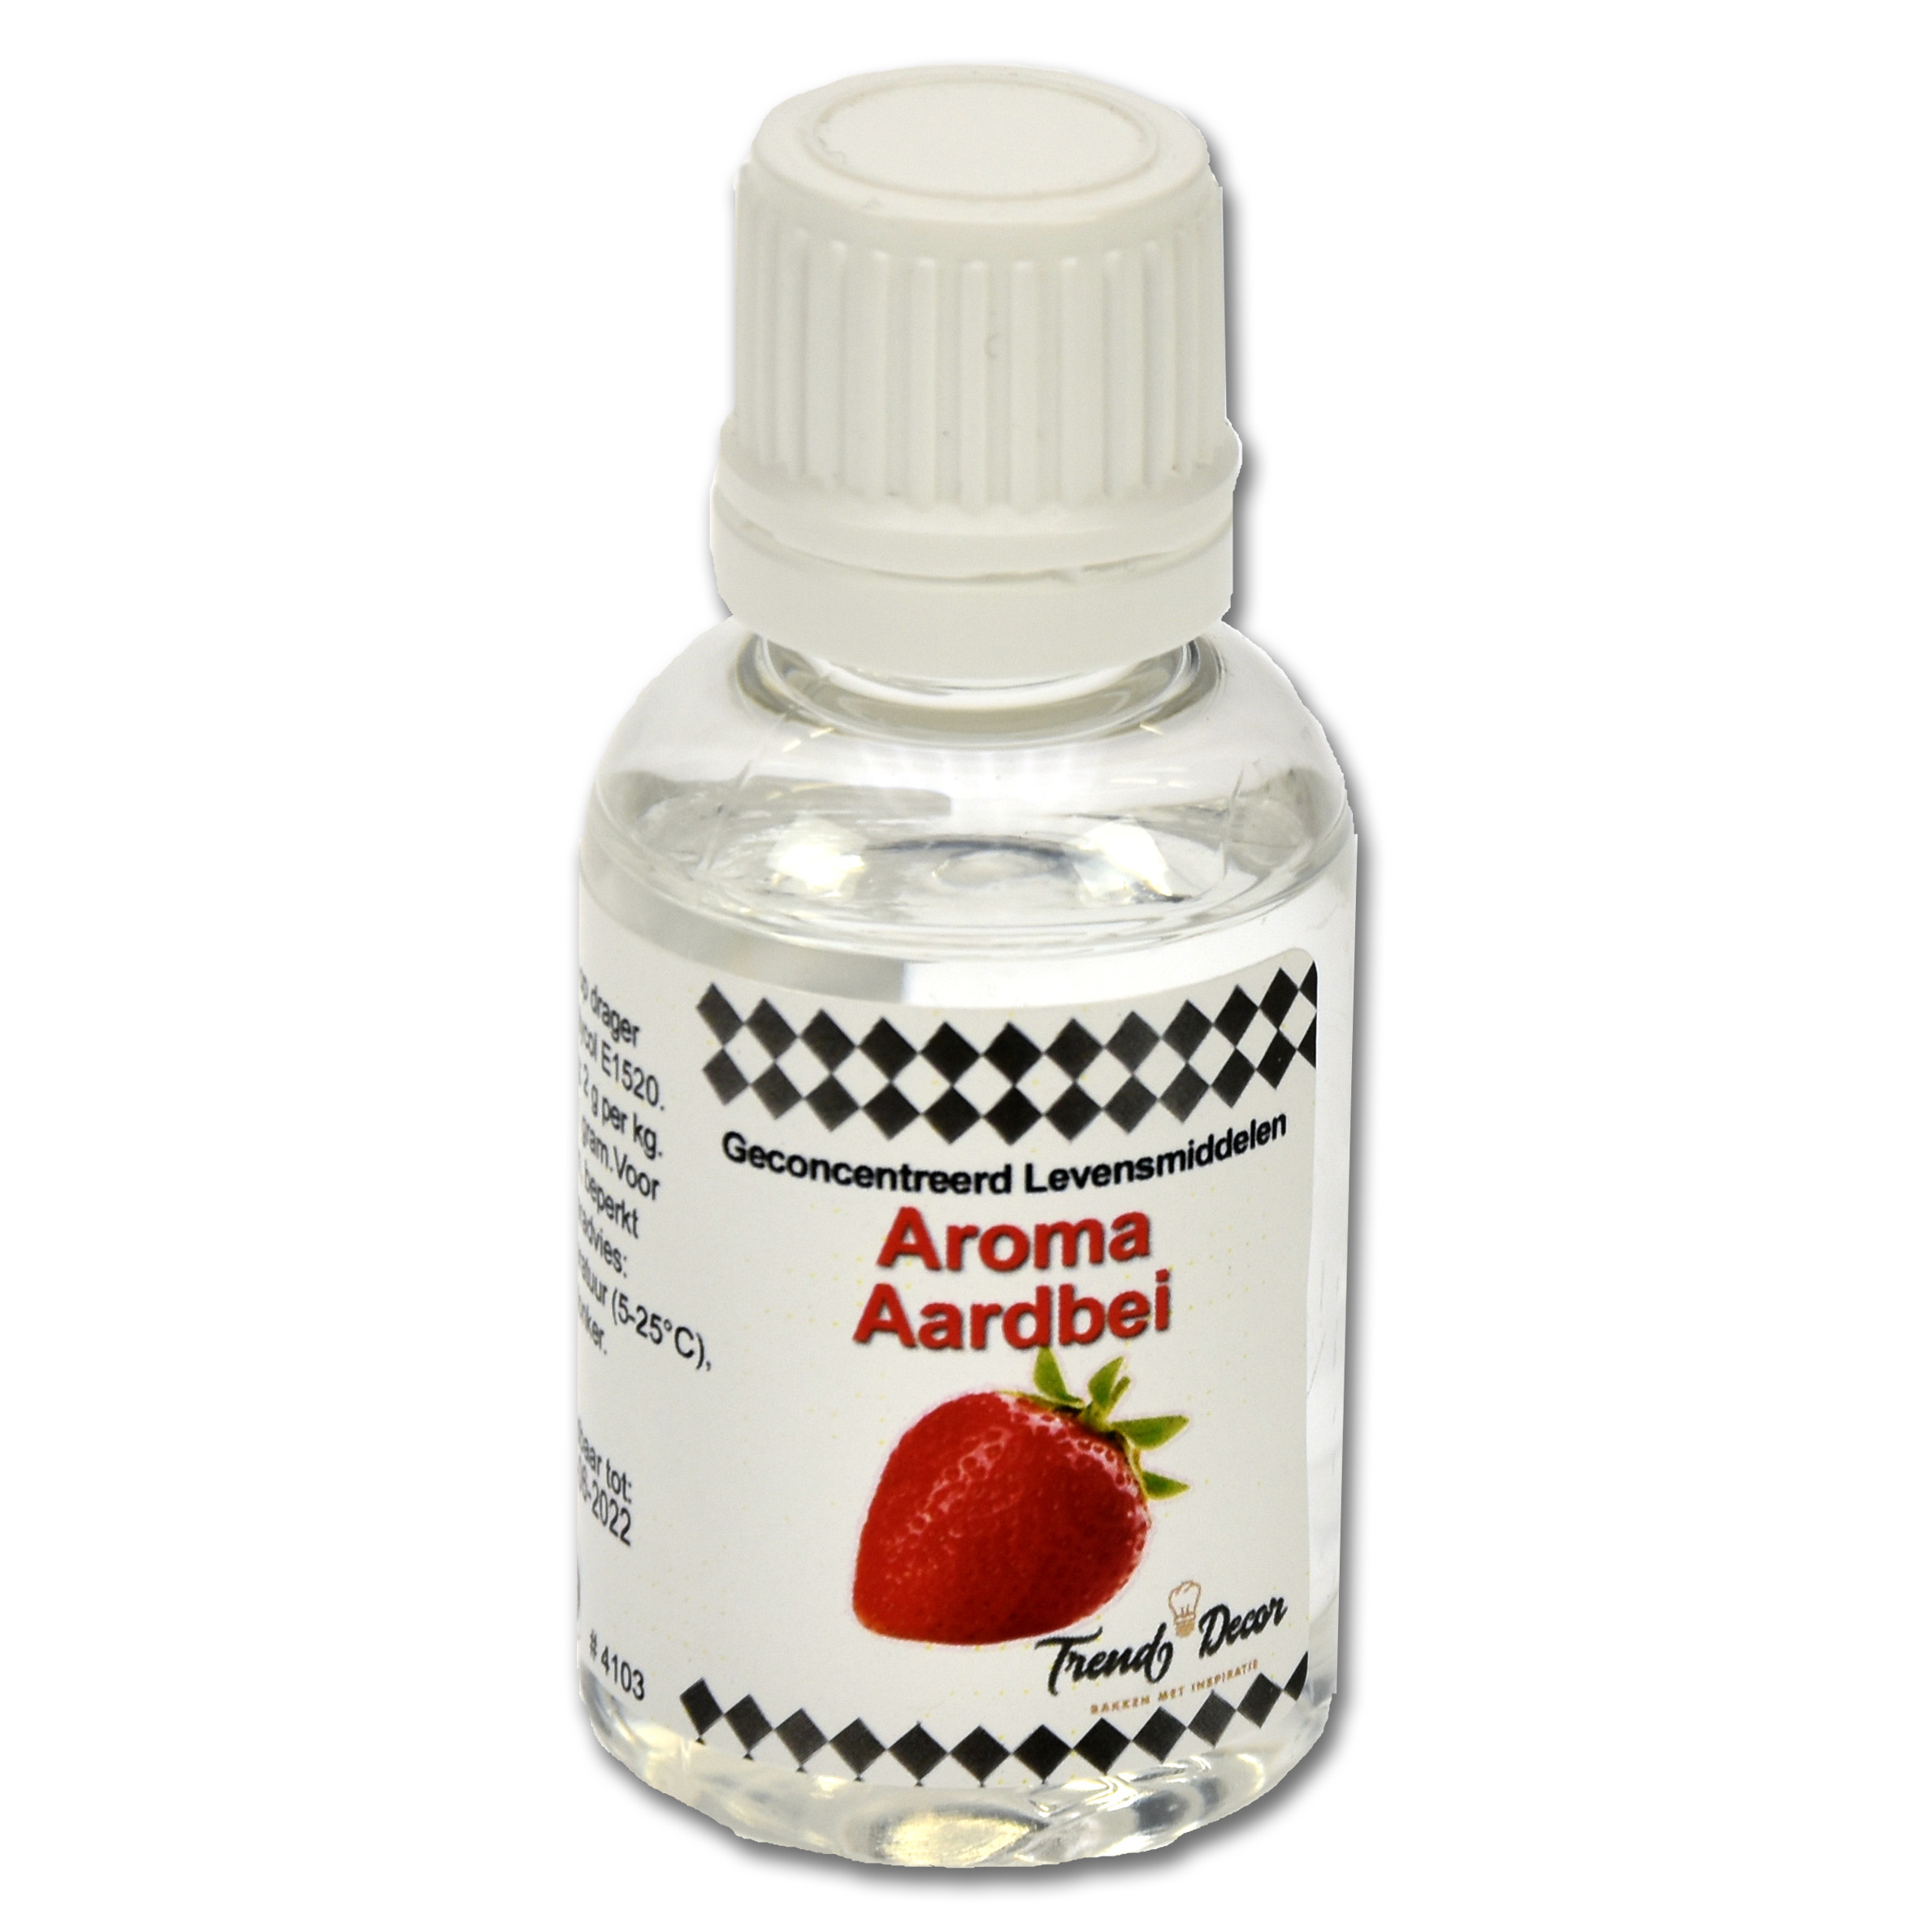 Geconcentreerd Levensmiddelen Aroma - Aardbei